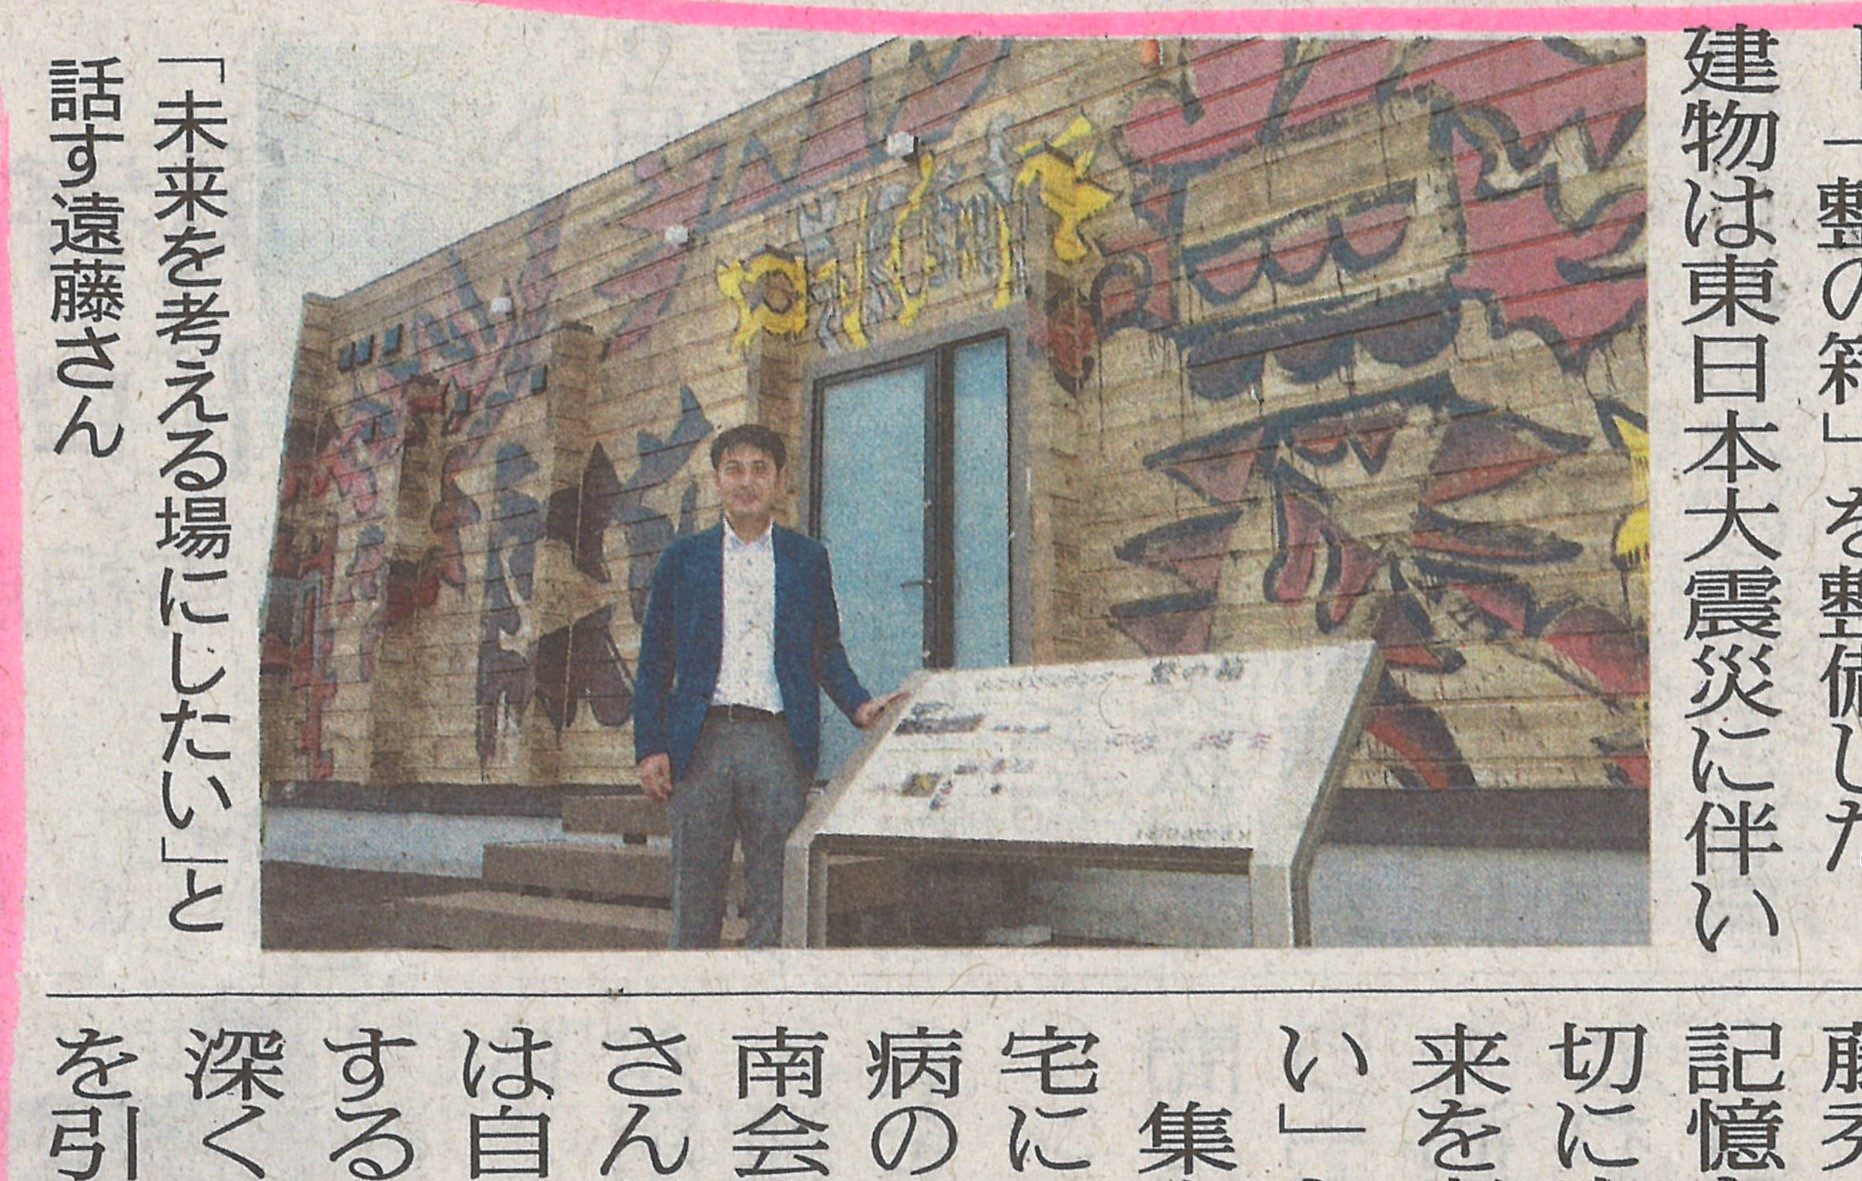 【メディア掲載】「整の箱」の記事が福島民友に掲載されましたの画像